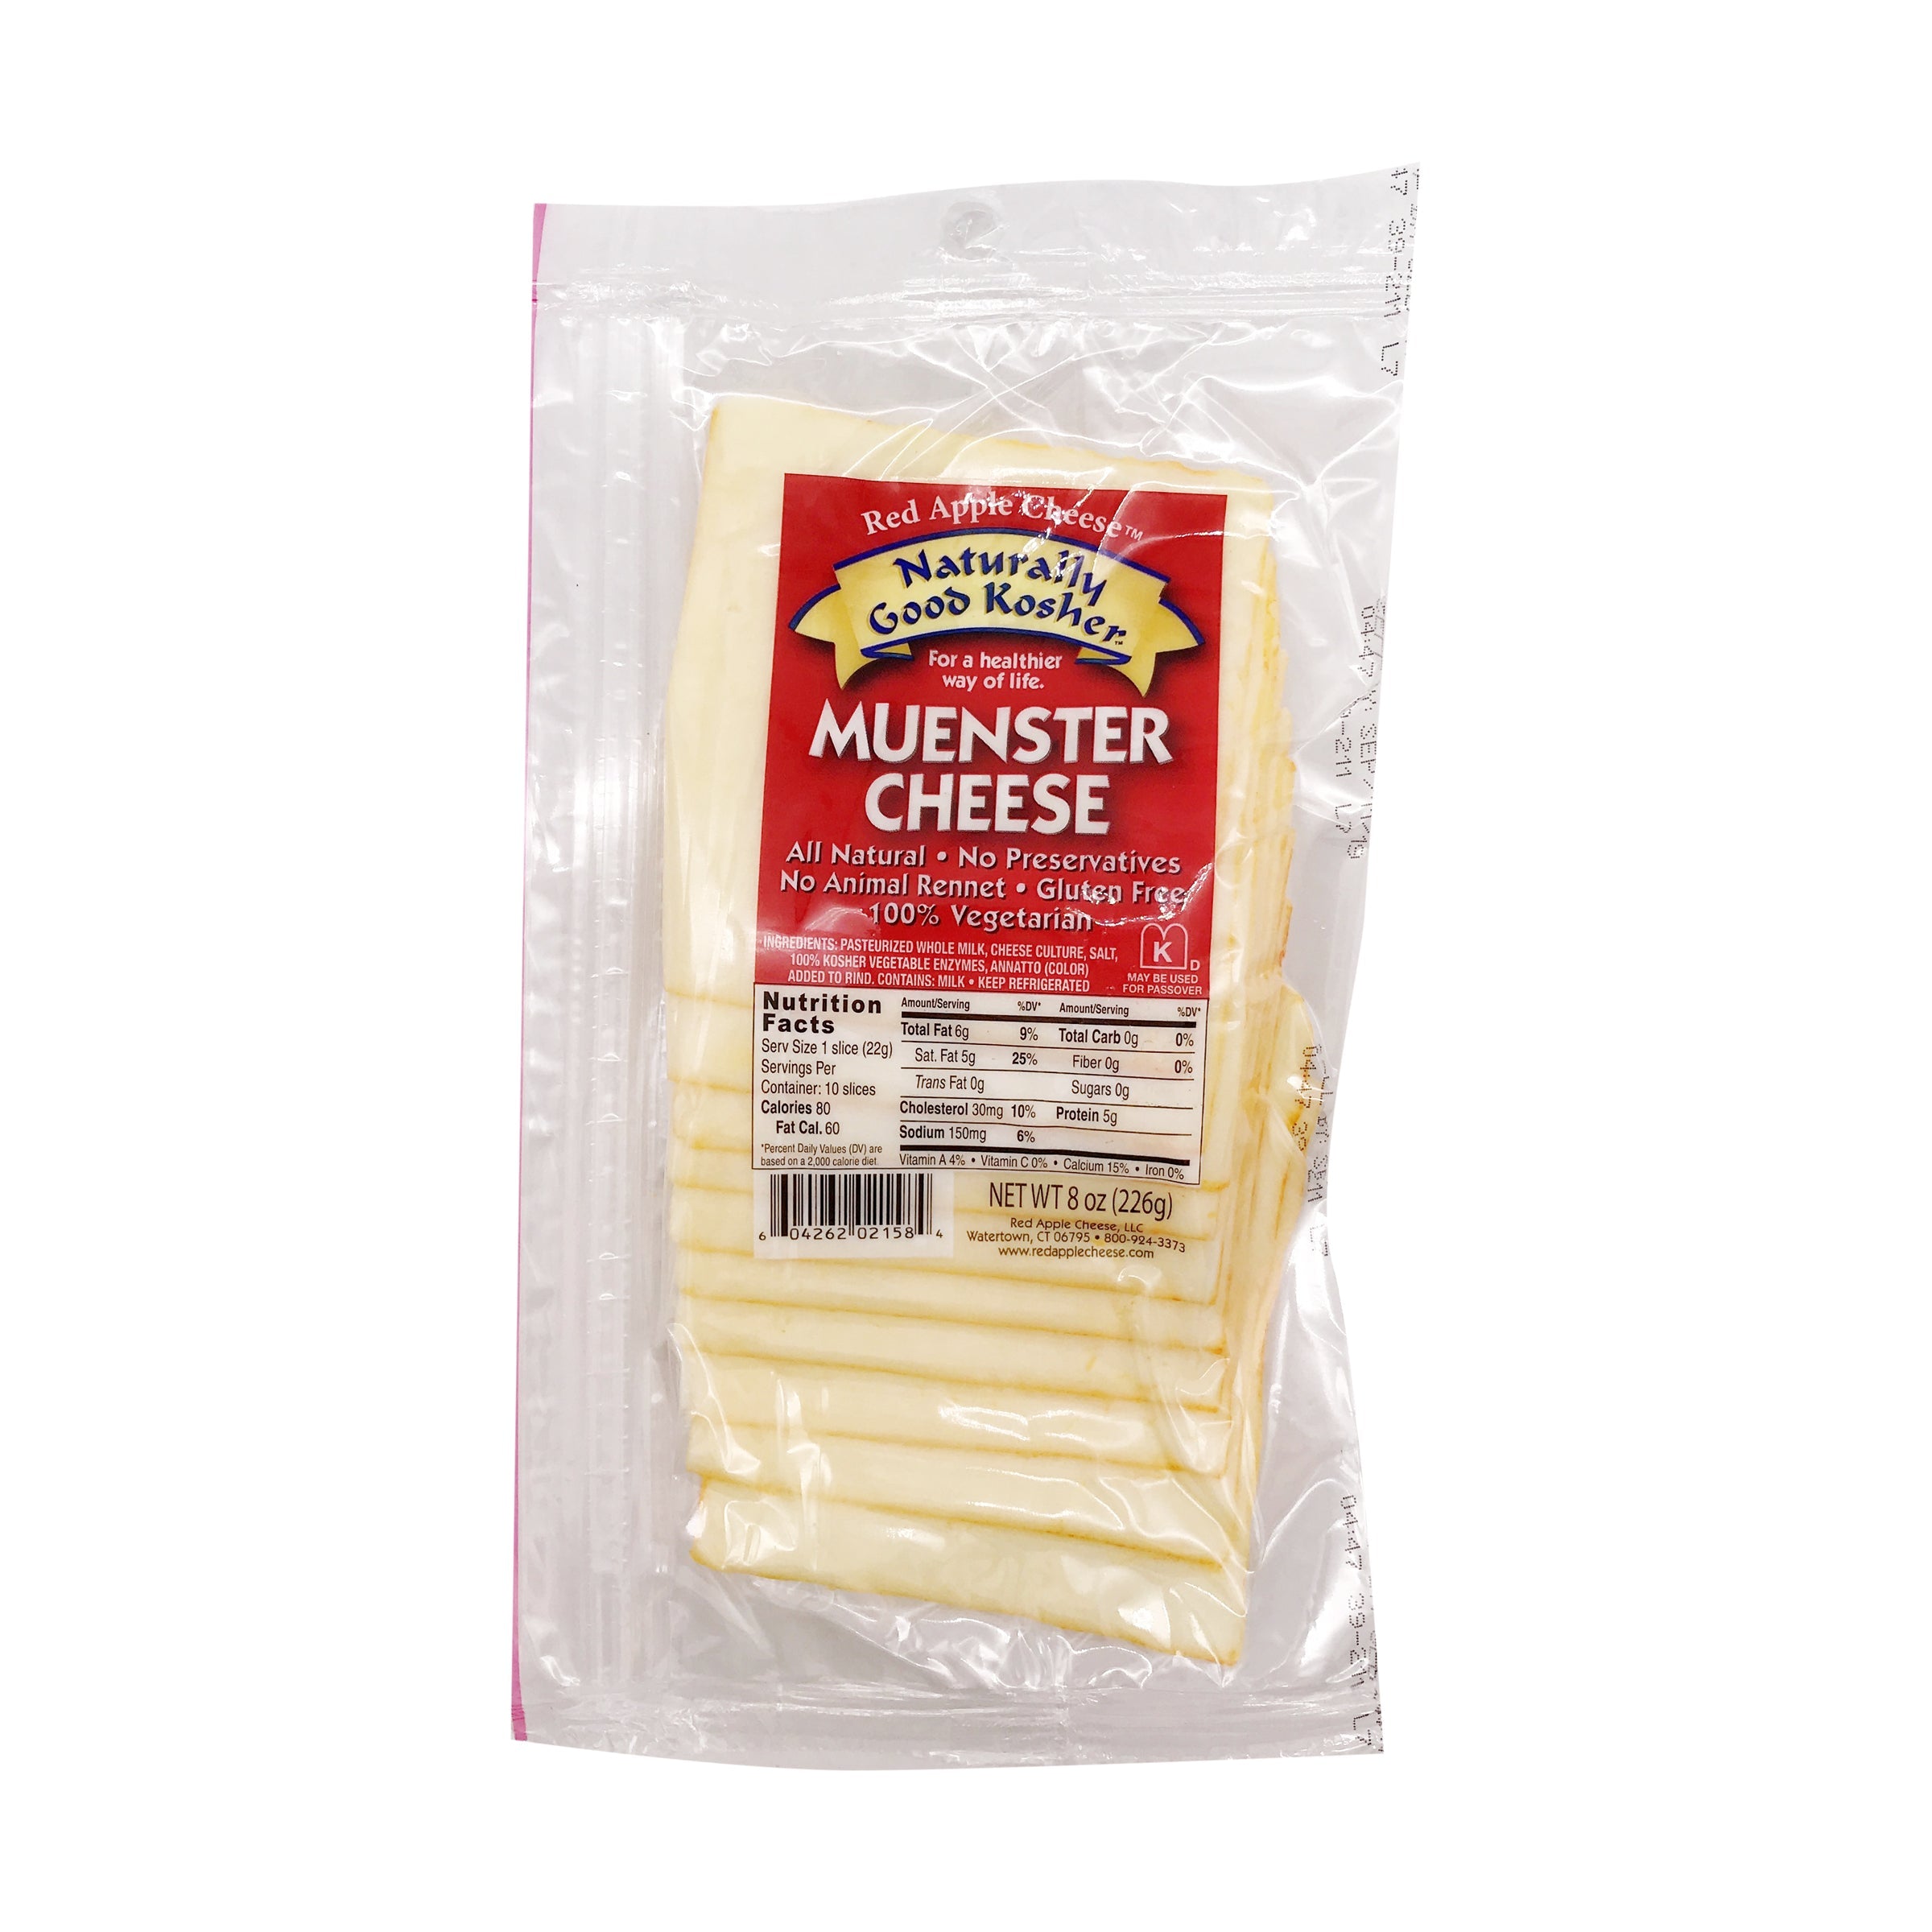 Naturally Good Kosher Muenster cheese 8oz 12ct